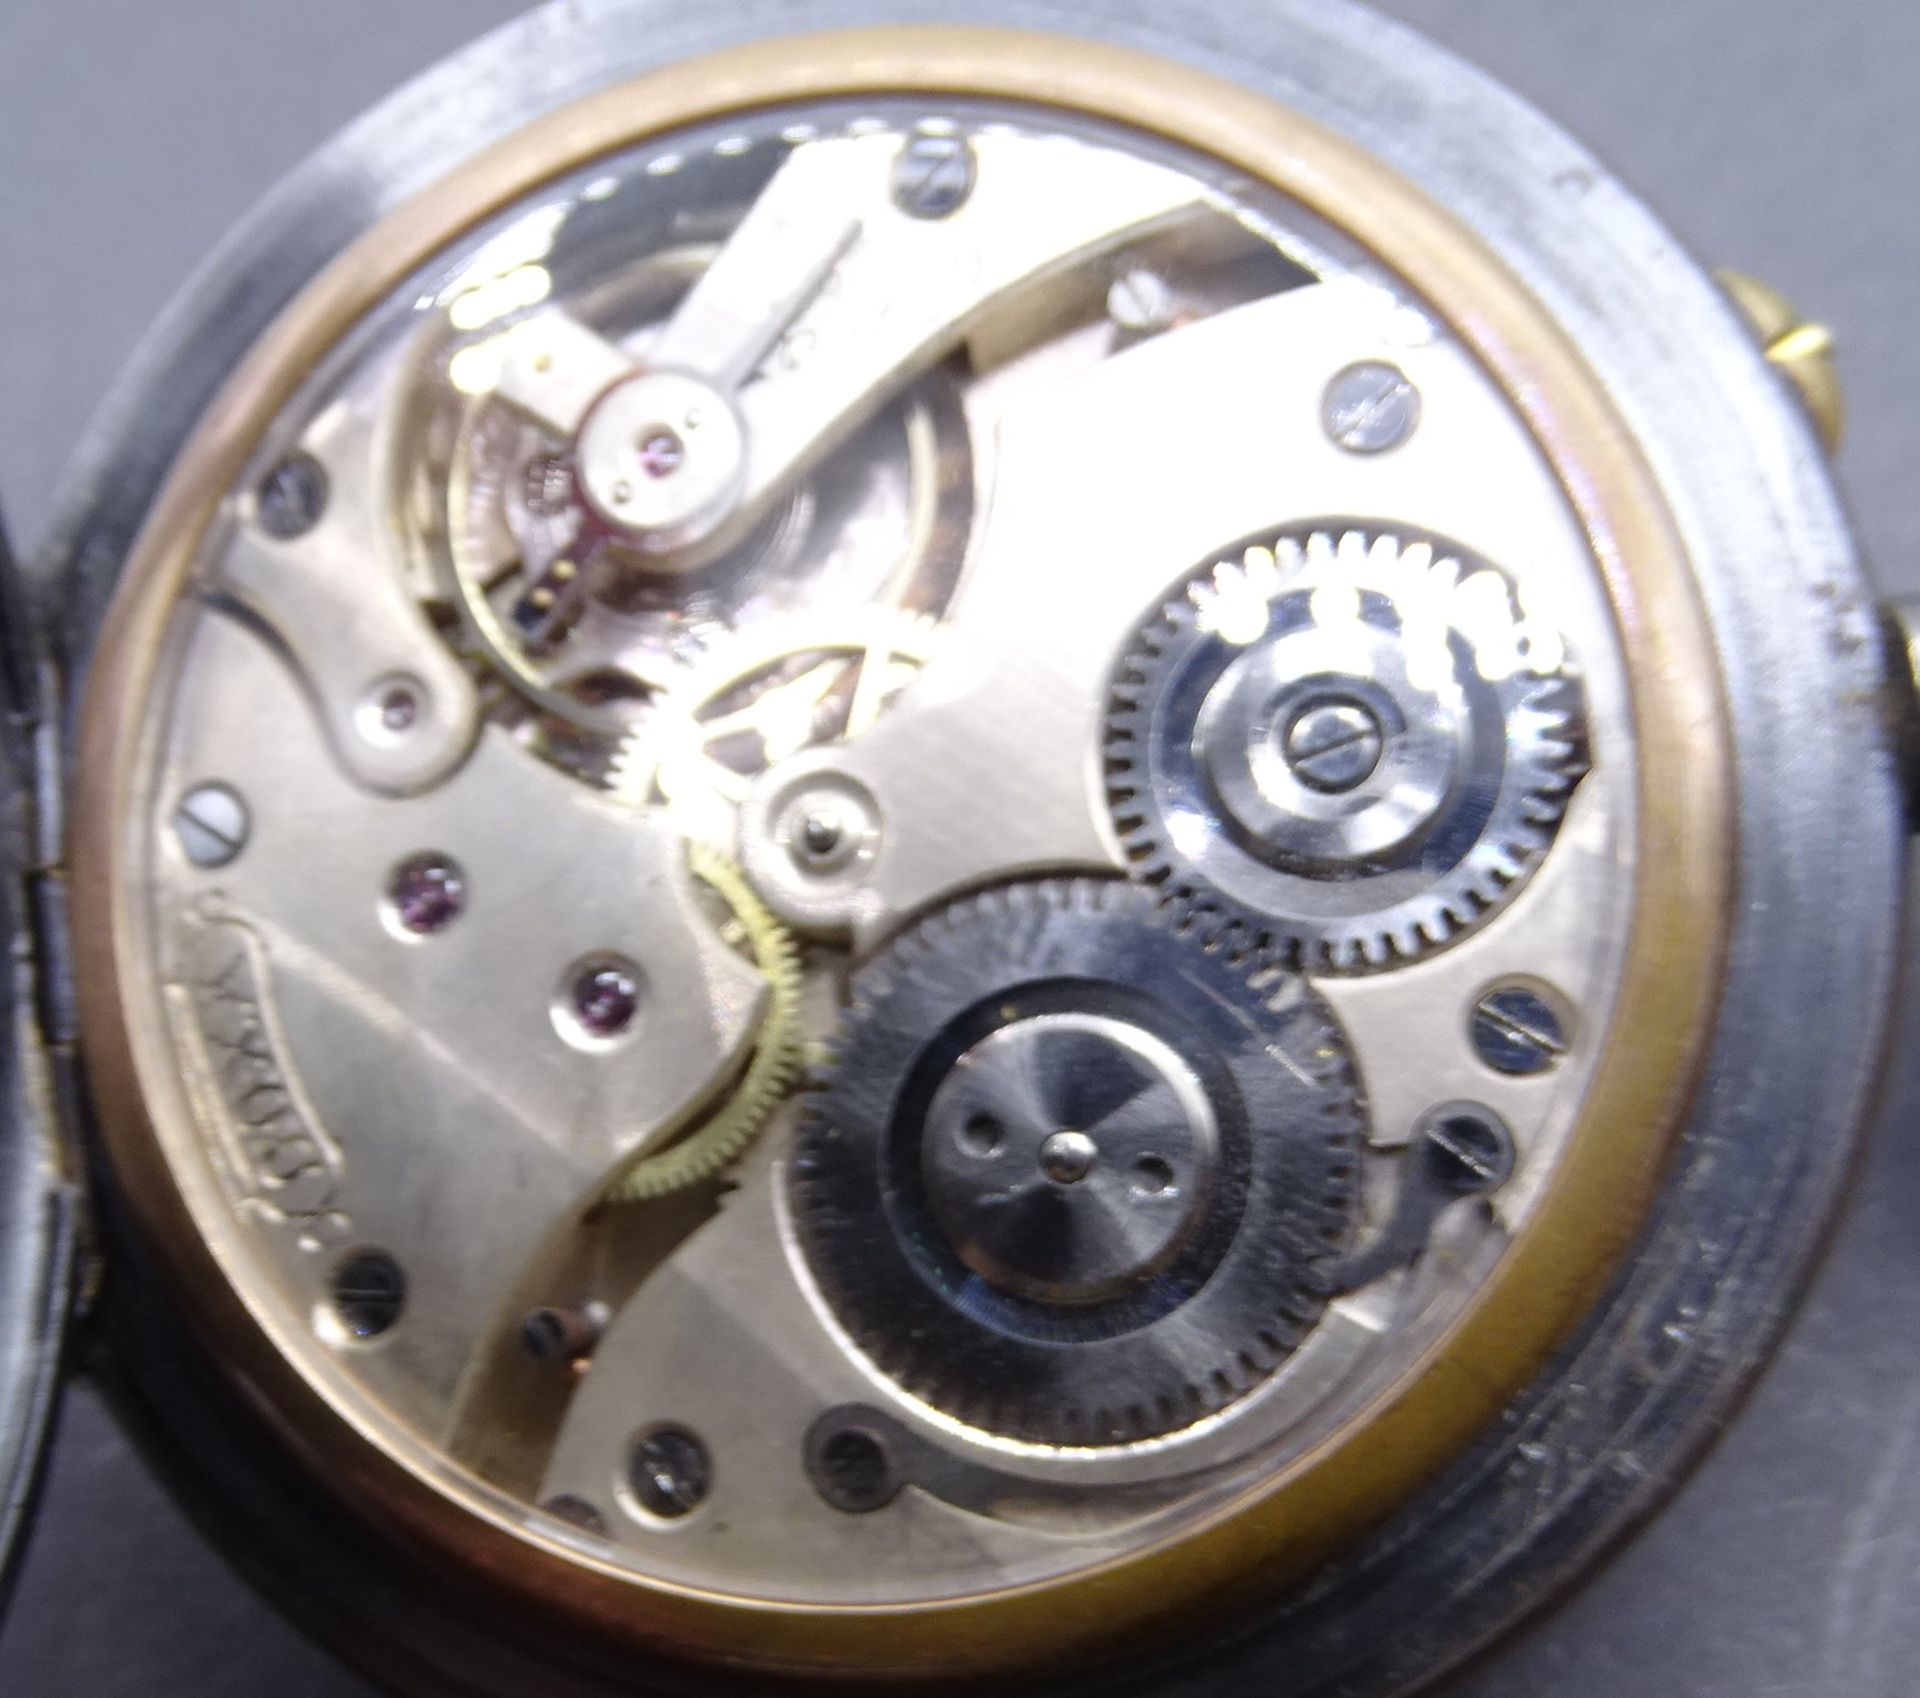 grosse Taschenuhr "Doxa" Metallgehäuse. Werk mit Glas-Staubdeckel, Uhrenglas fehlt, Werk läuft, D-7 - Image 5 of 5